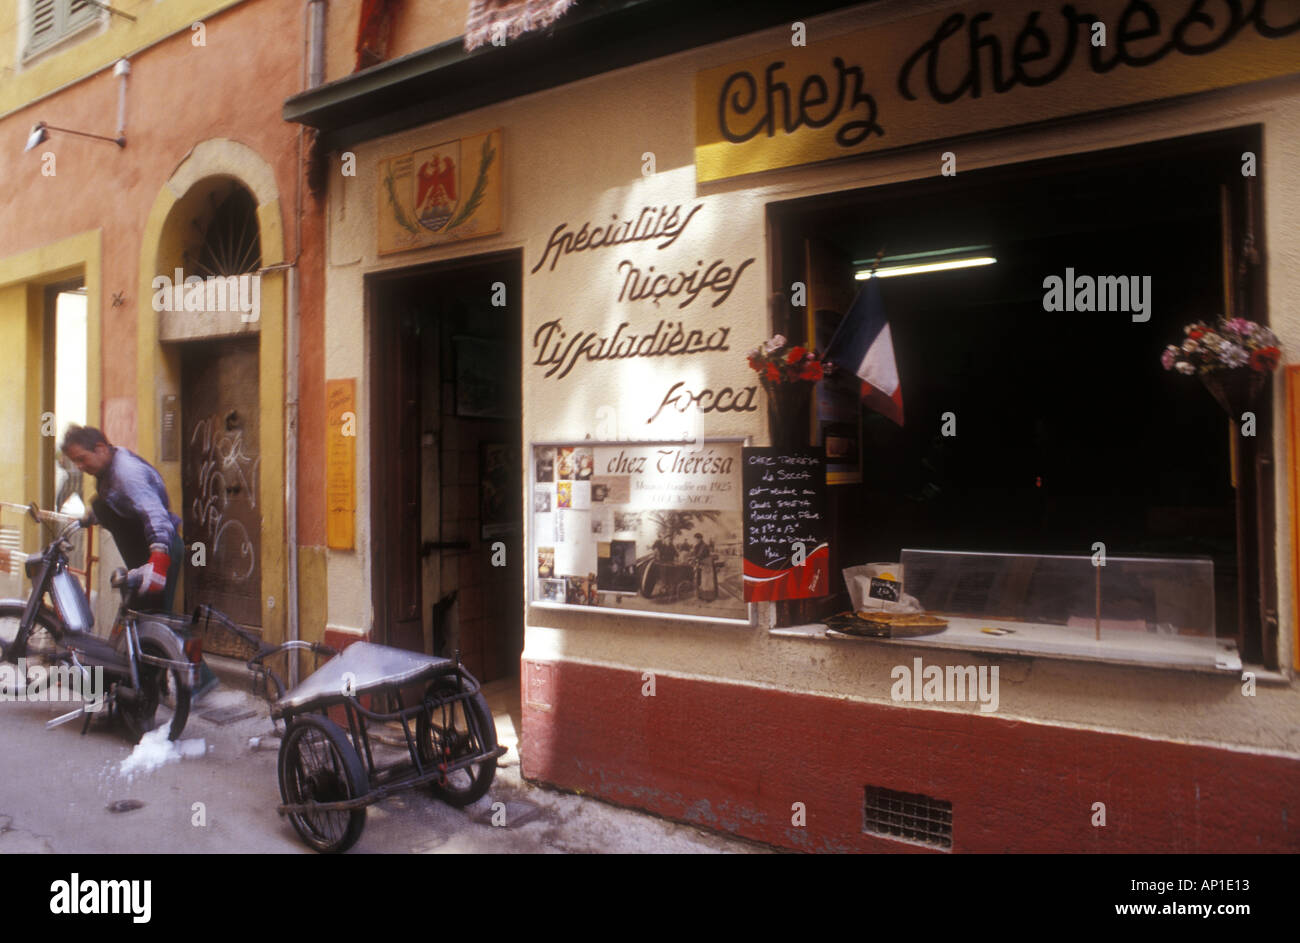 Location prestation de socca la crêpe de pois chiches nicois street food chez theresa à vieux vieux Nice cote d'azur france Banque D'Images